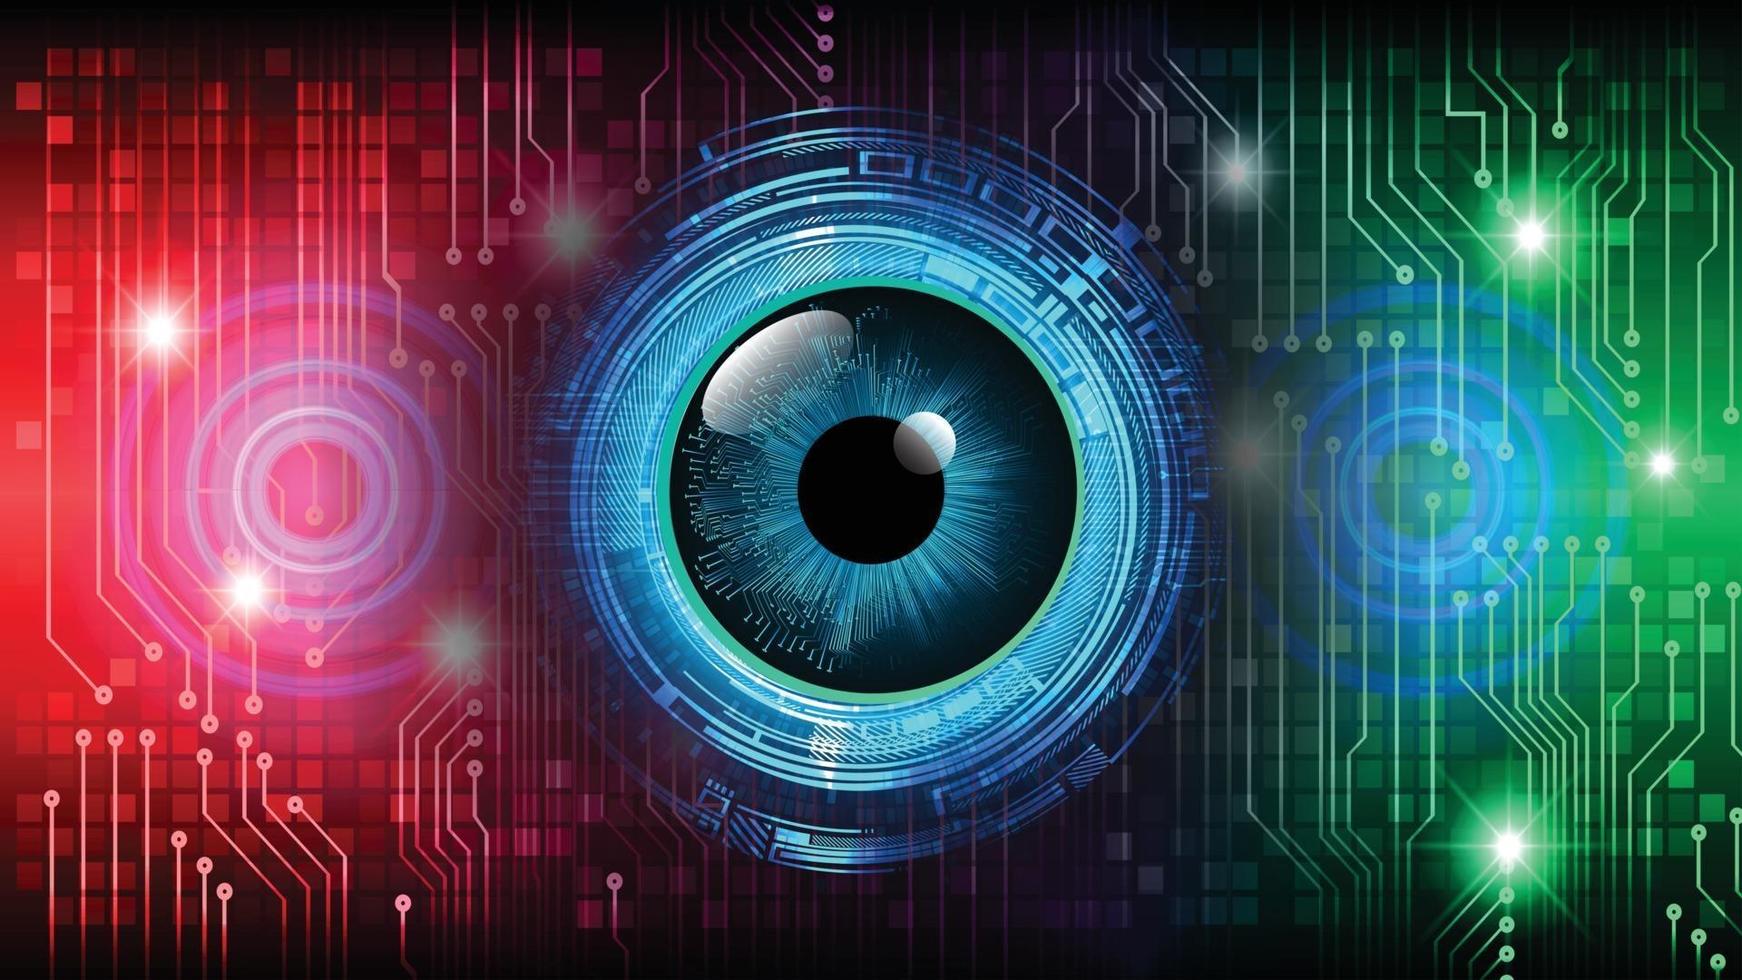 ögon cyber krets framtida teknik koncept bakgrund vektor